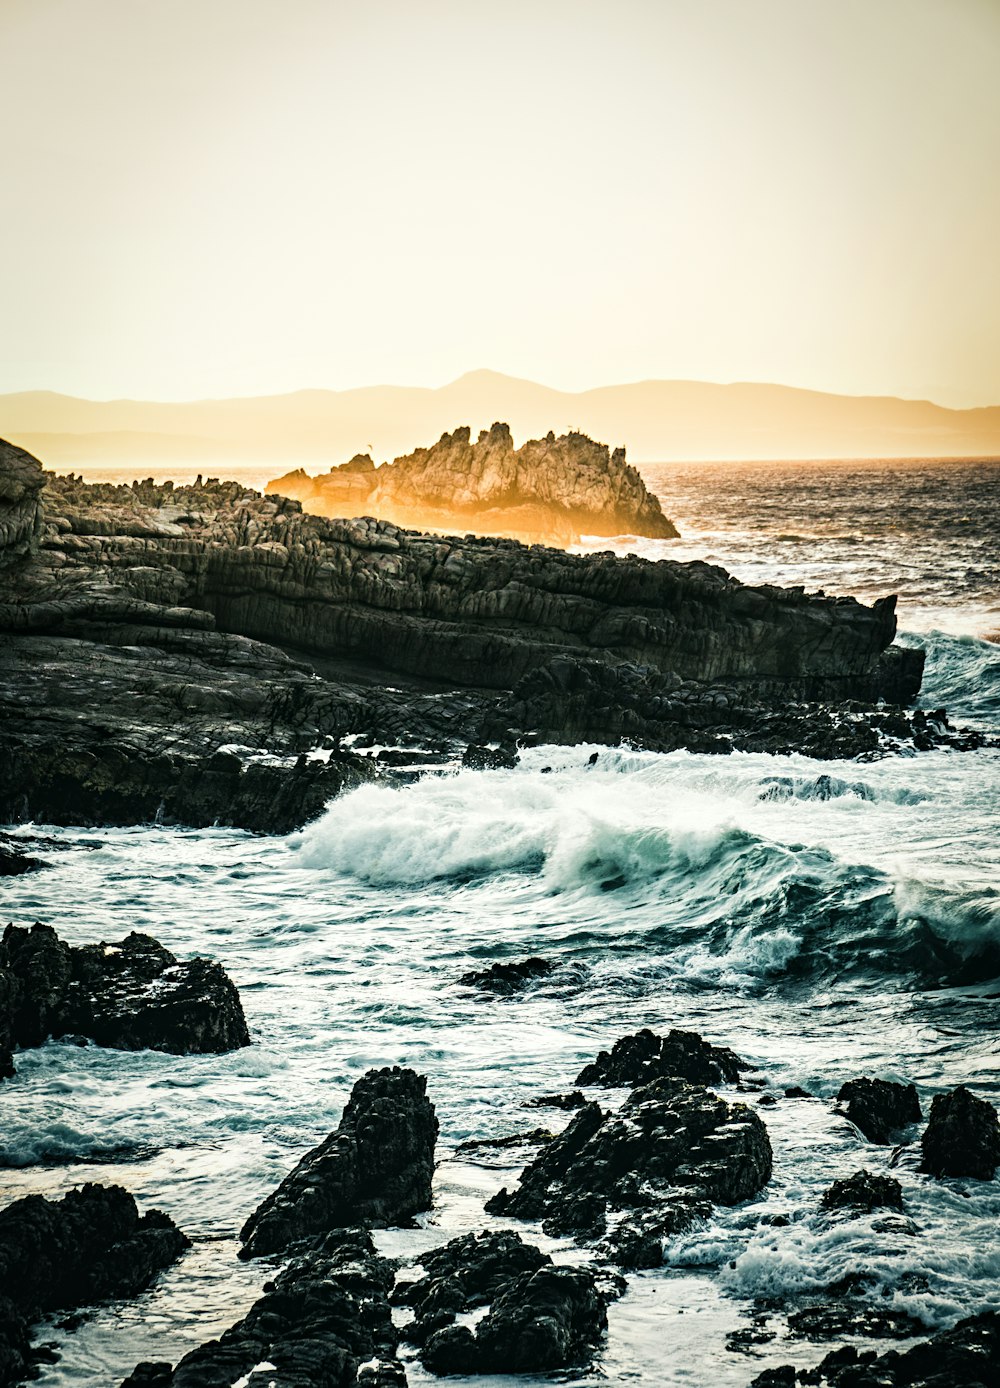 Formation rocheuse entourée par la mer